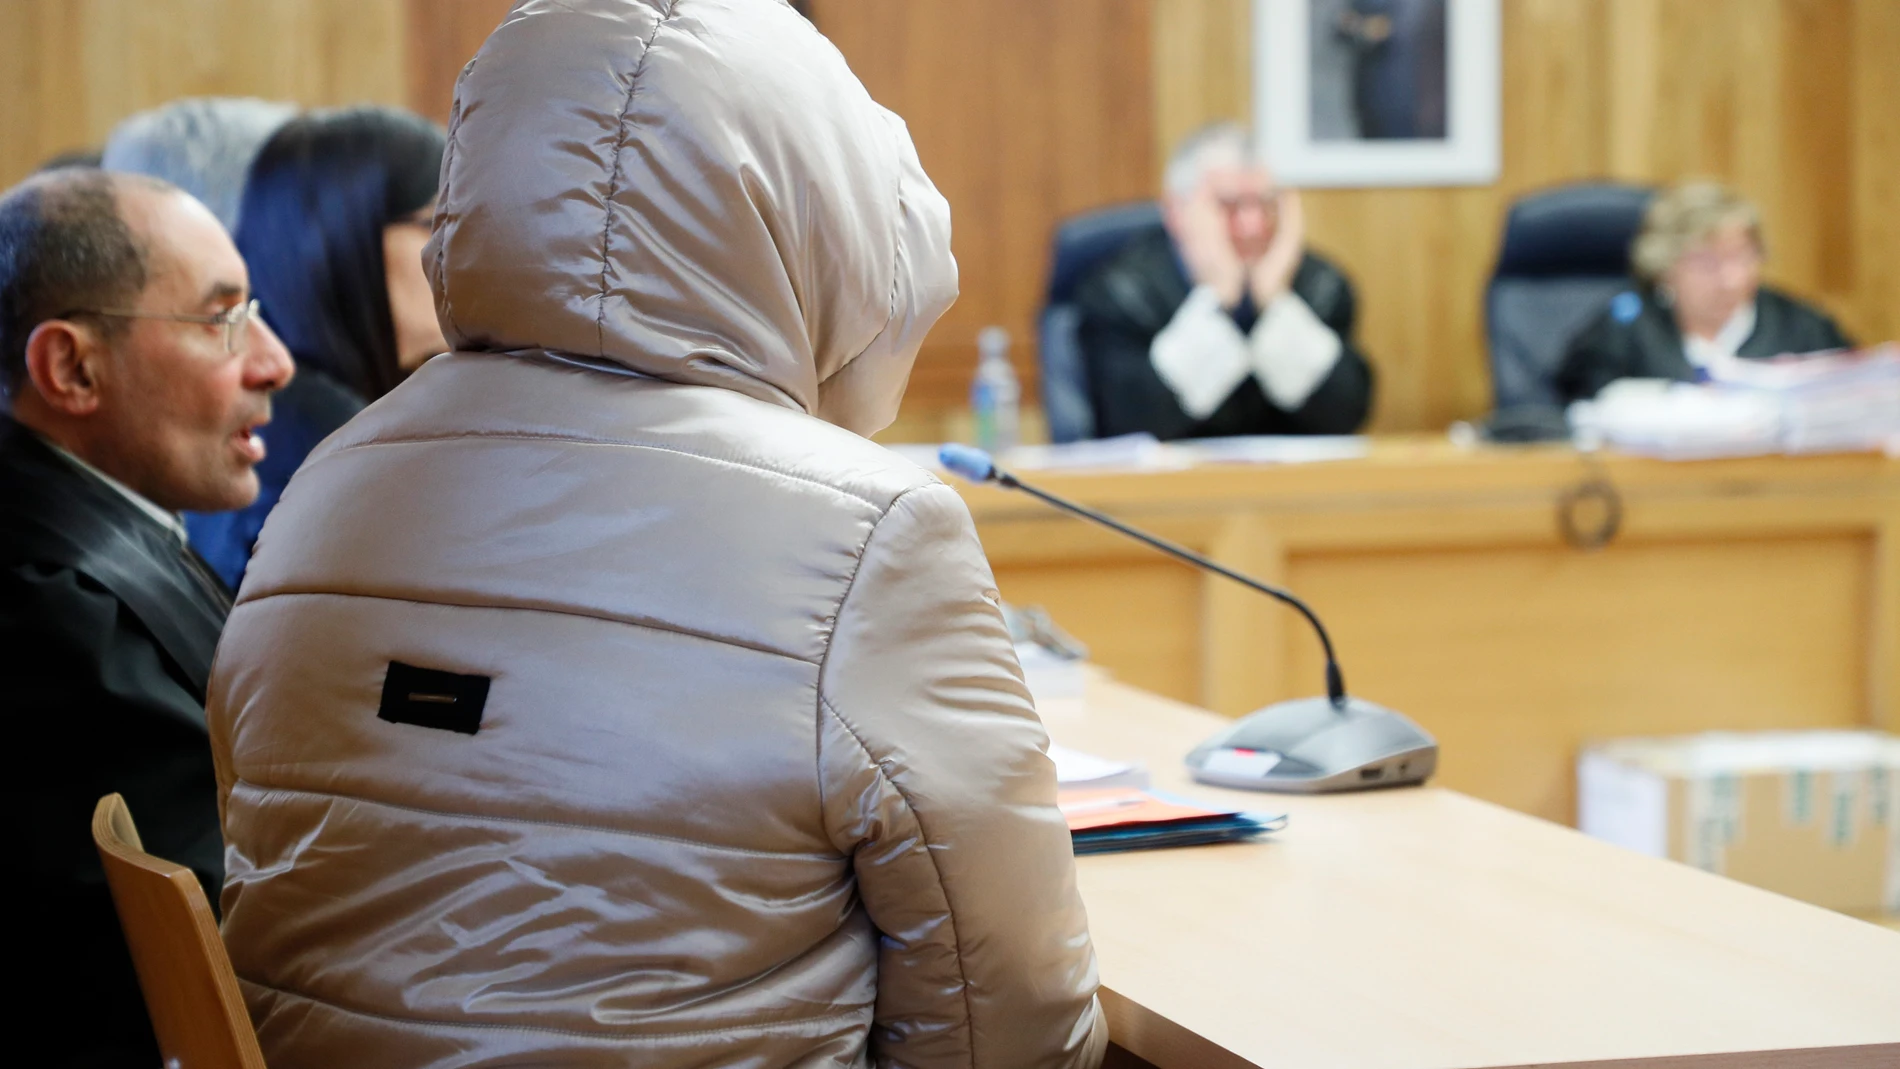 Ana Sandamil vuelve a sentarse en el banquillo por asesinar a su hija en Lugo